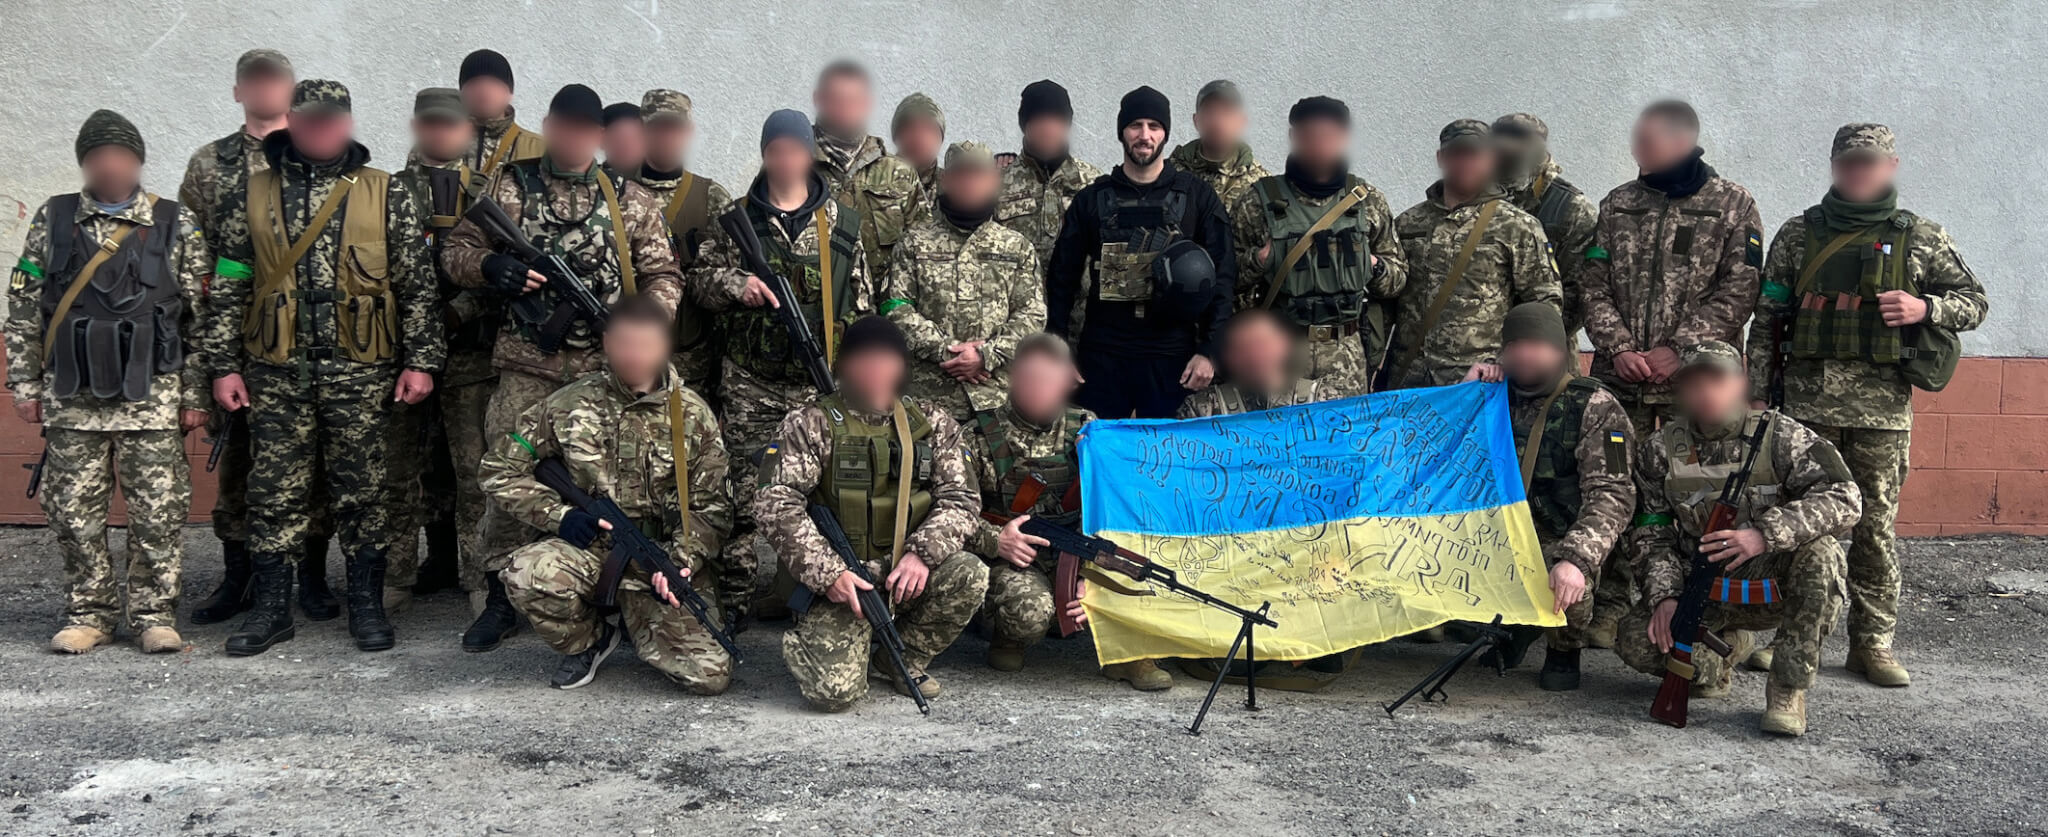 Marine veteran finds calling in support of Ukraine resistance ...